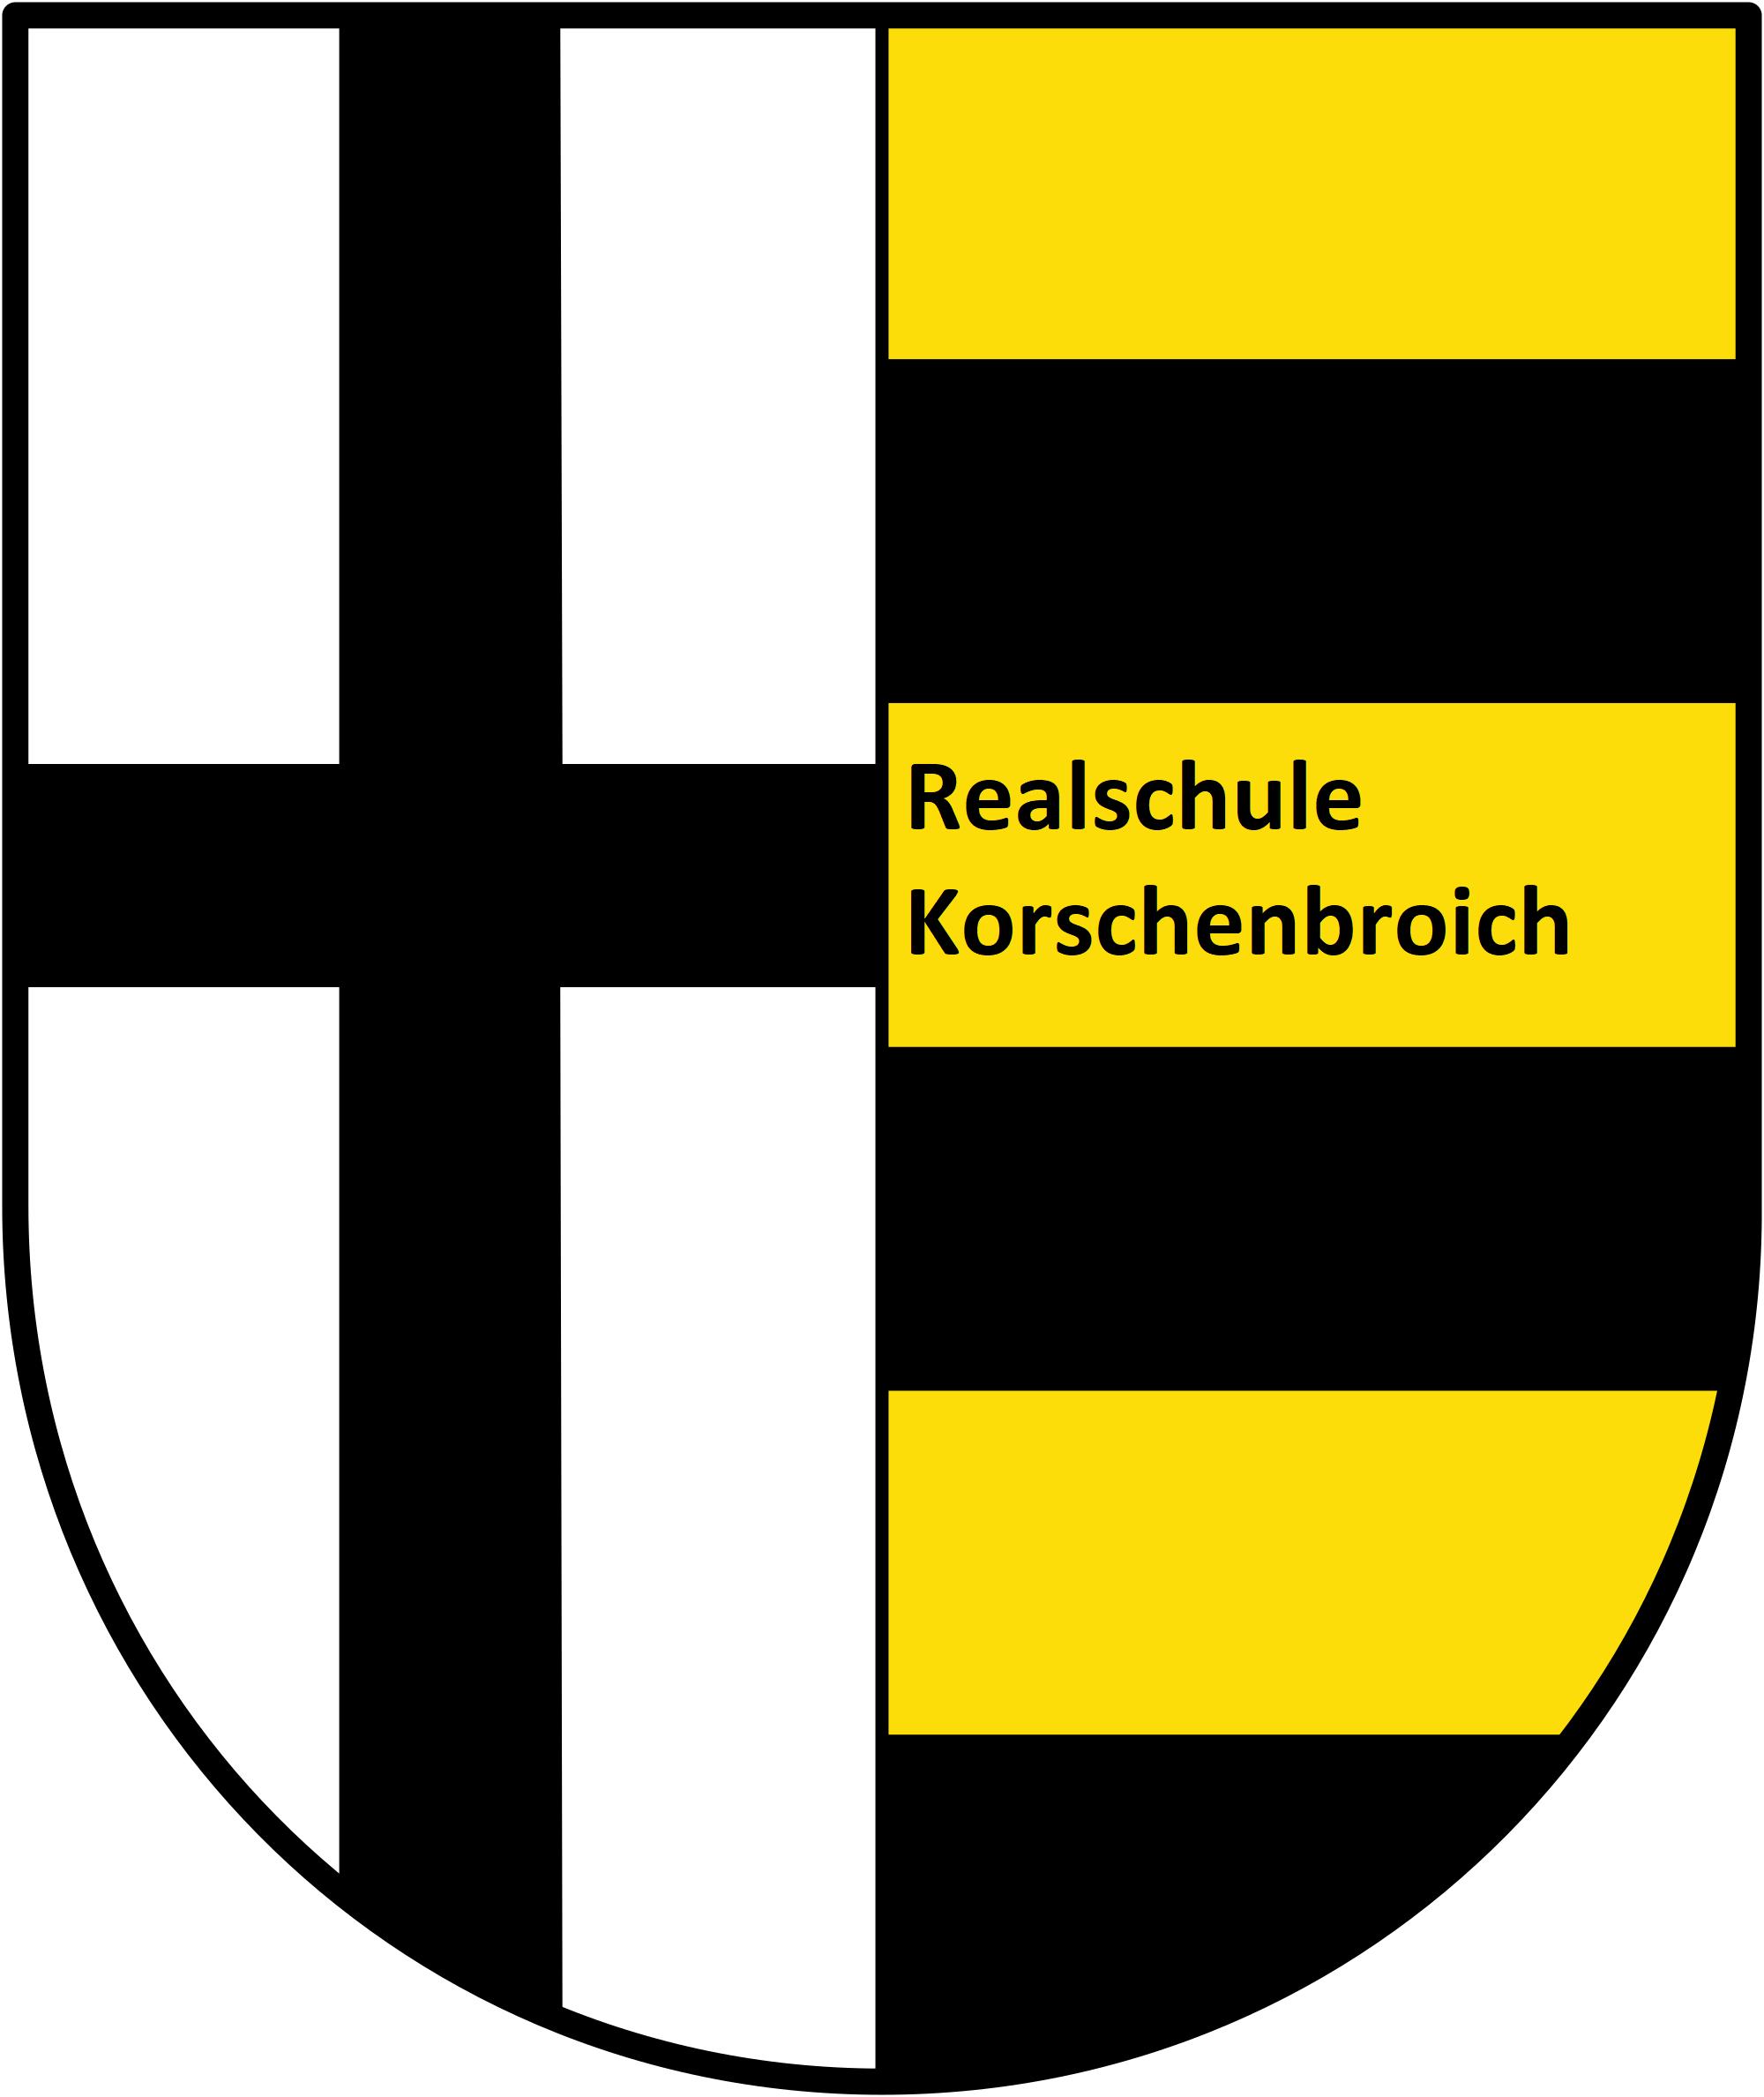 Realschule Korschenbroich